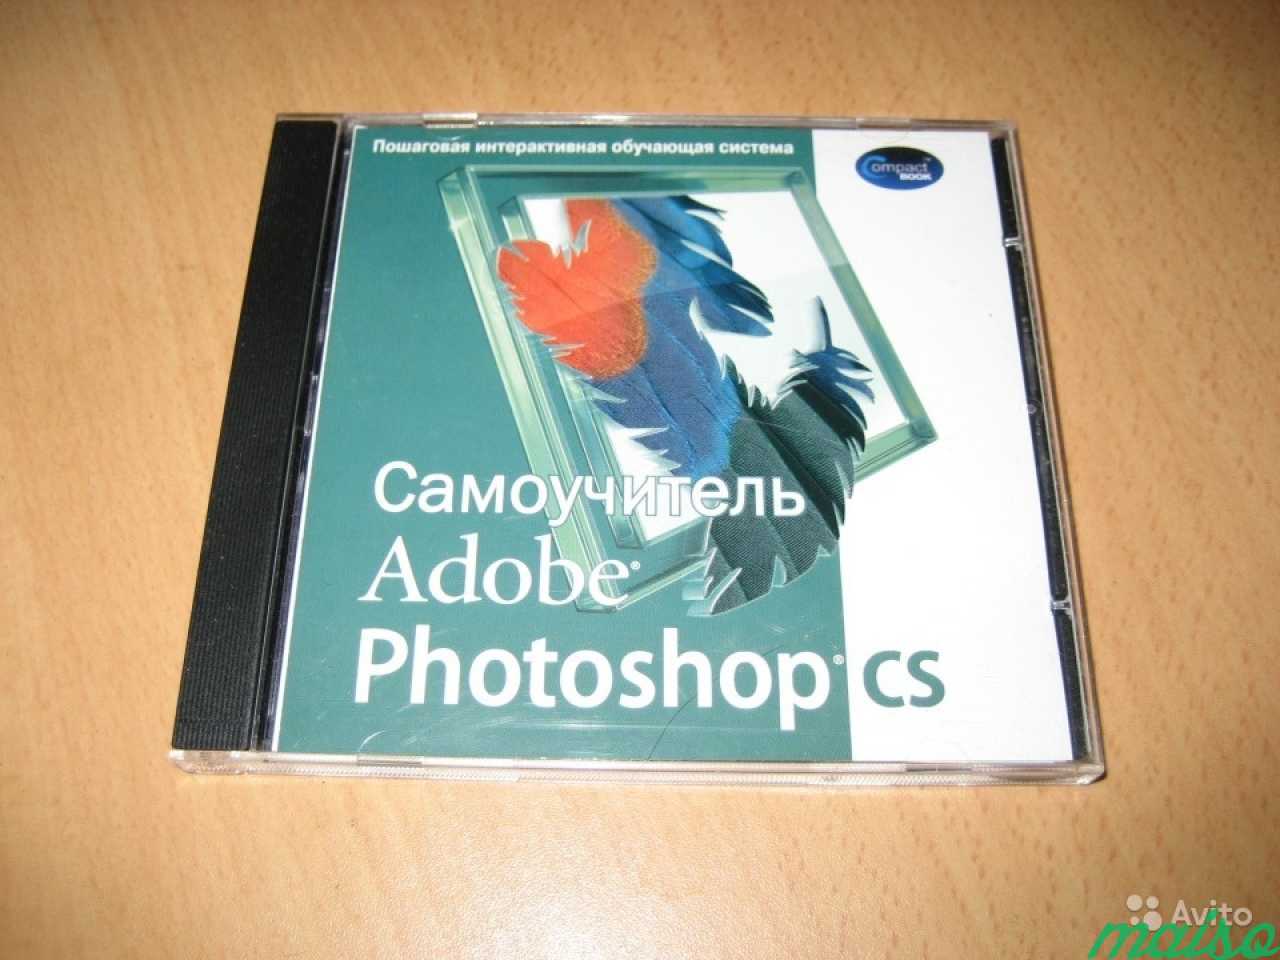 Adobe Photoshop CS самоучитель в Санкт-Петербурге. Фото 1